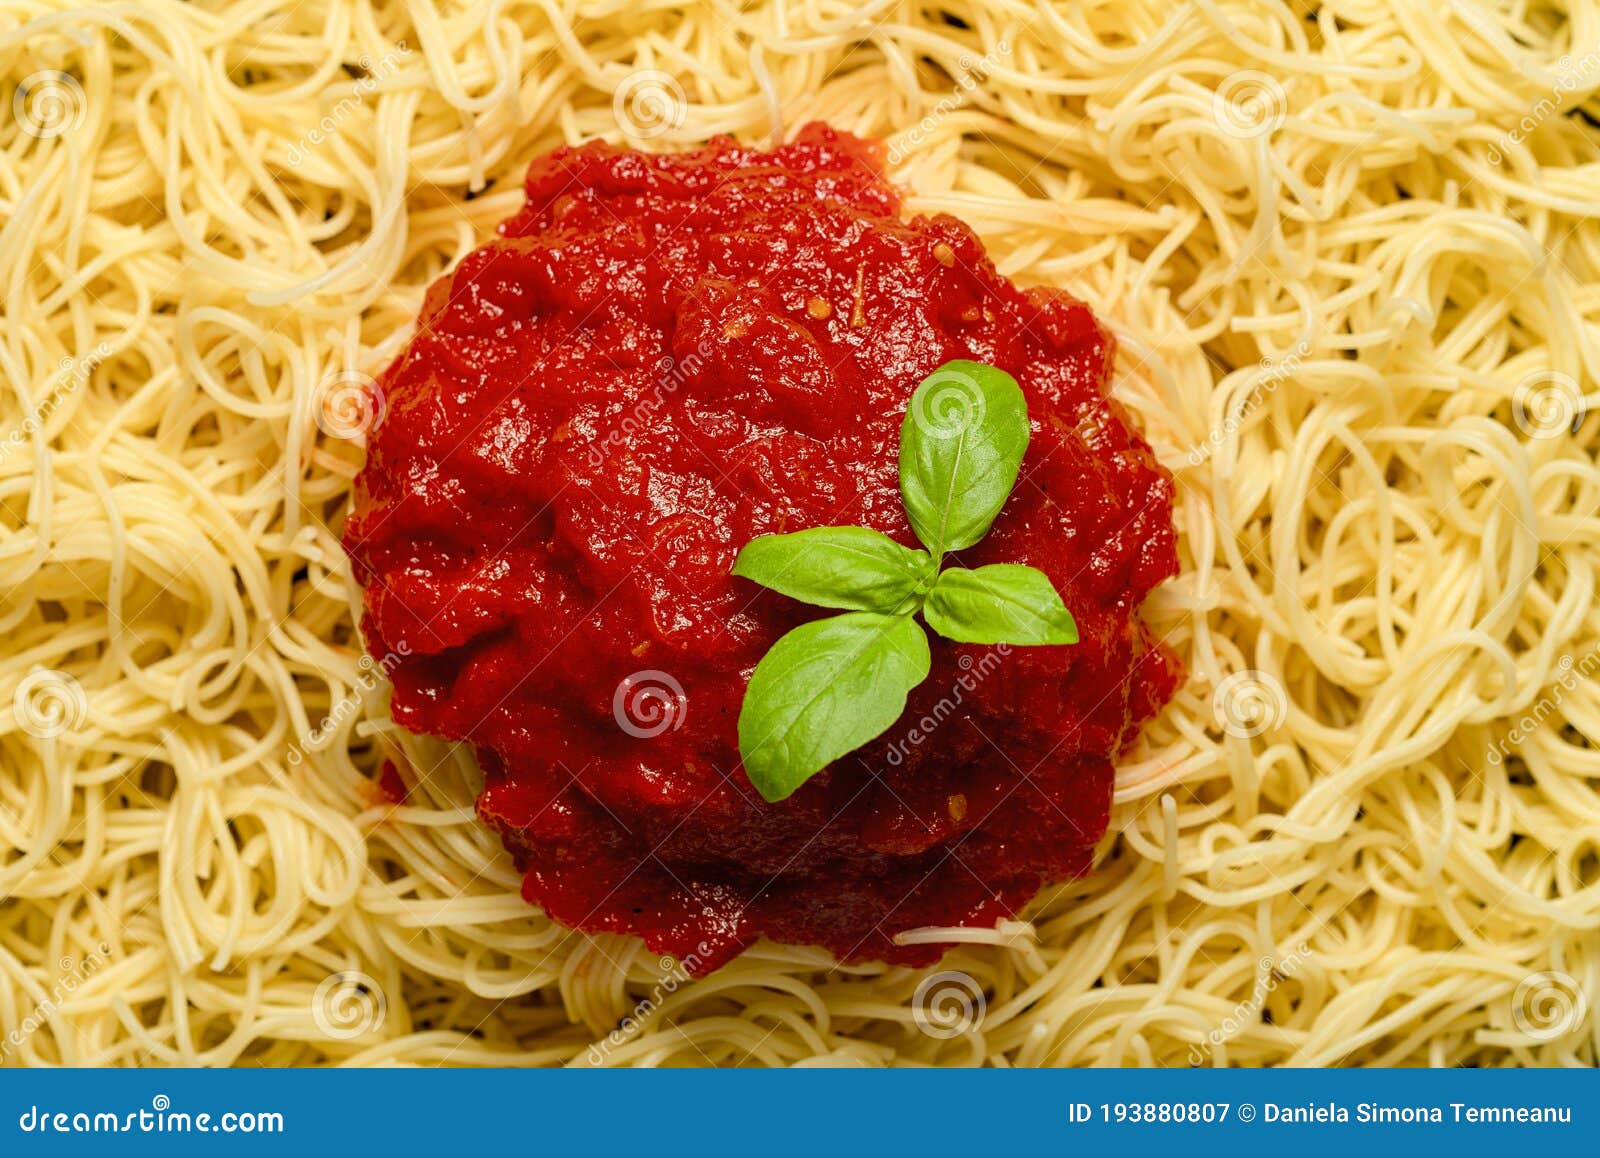 Espagueti Con Salsa De Tomate Y Hojas De Albahaca. Plato De Pasta Con Salsa  De Tomate Receta Italiana Imagen de archivo - Imagen de comodidad,  cocinado: 193880807